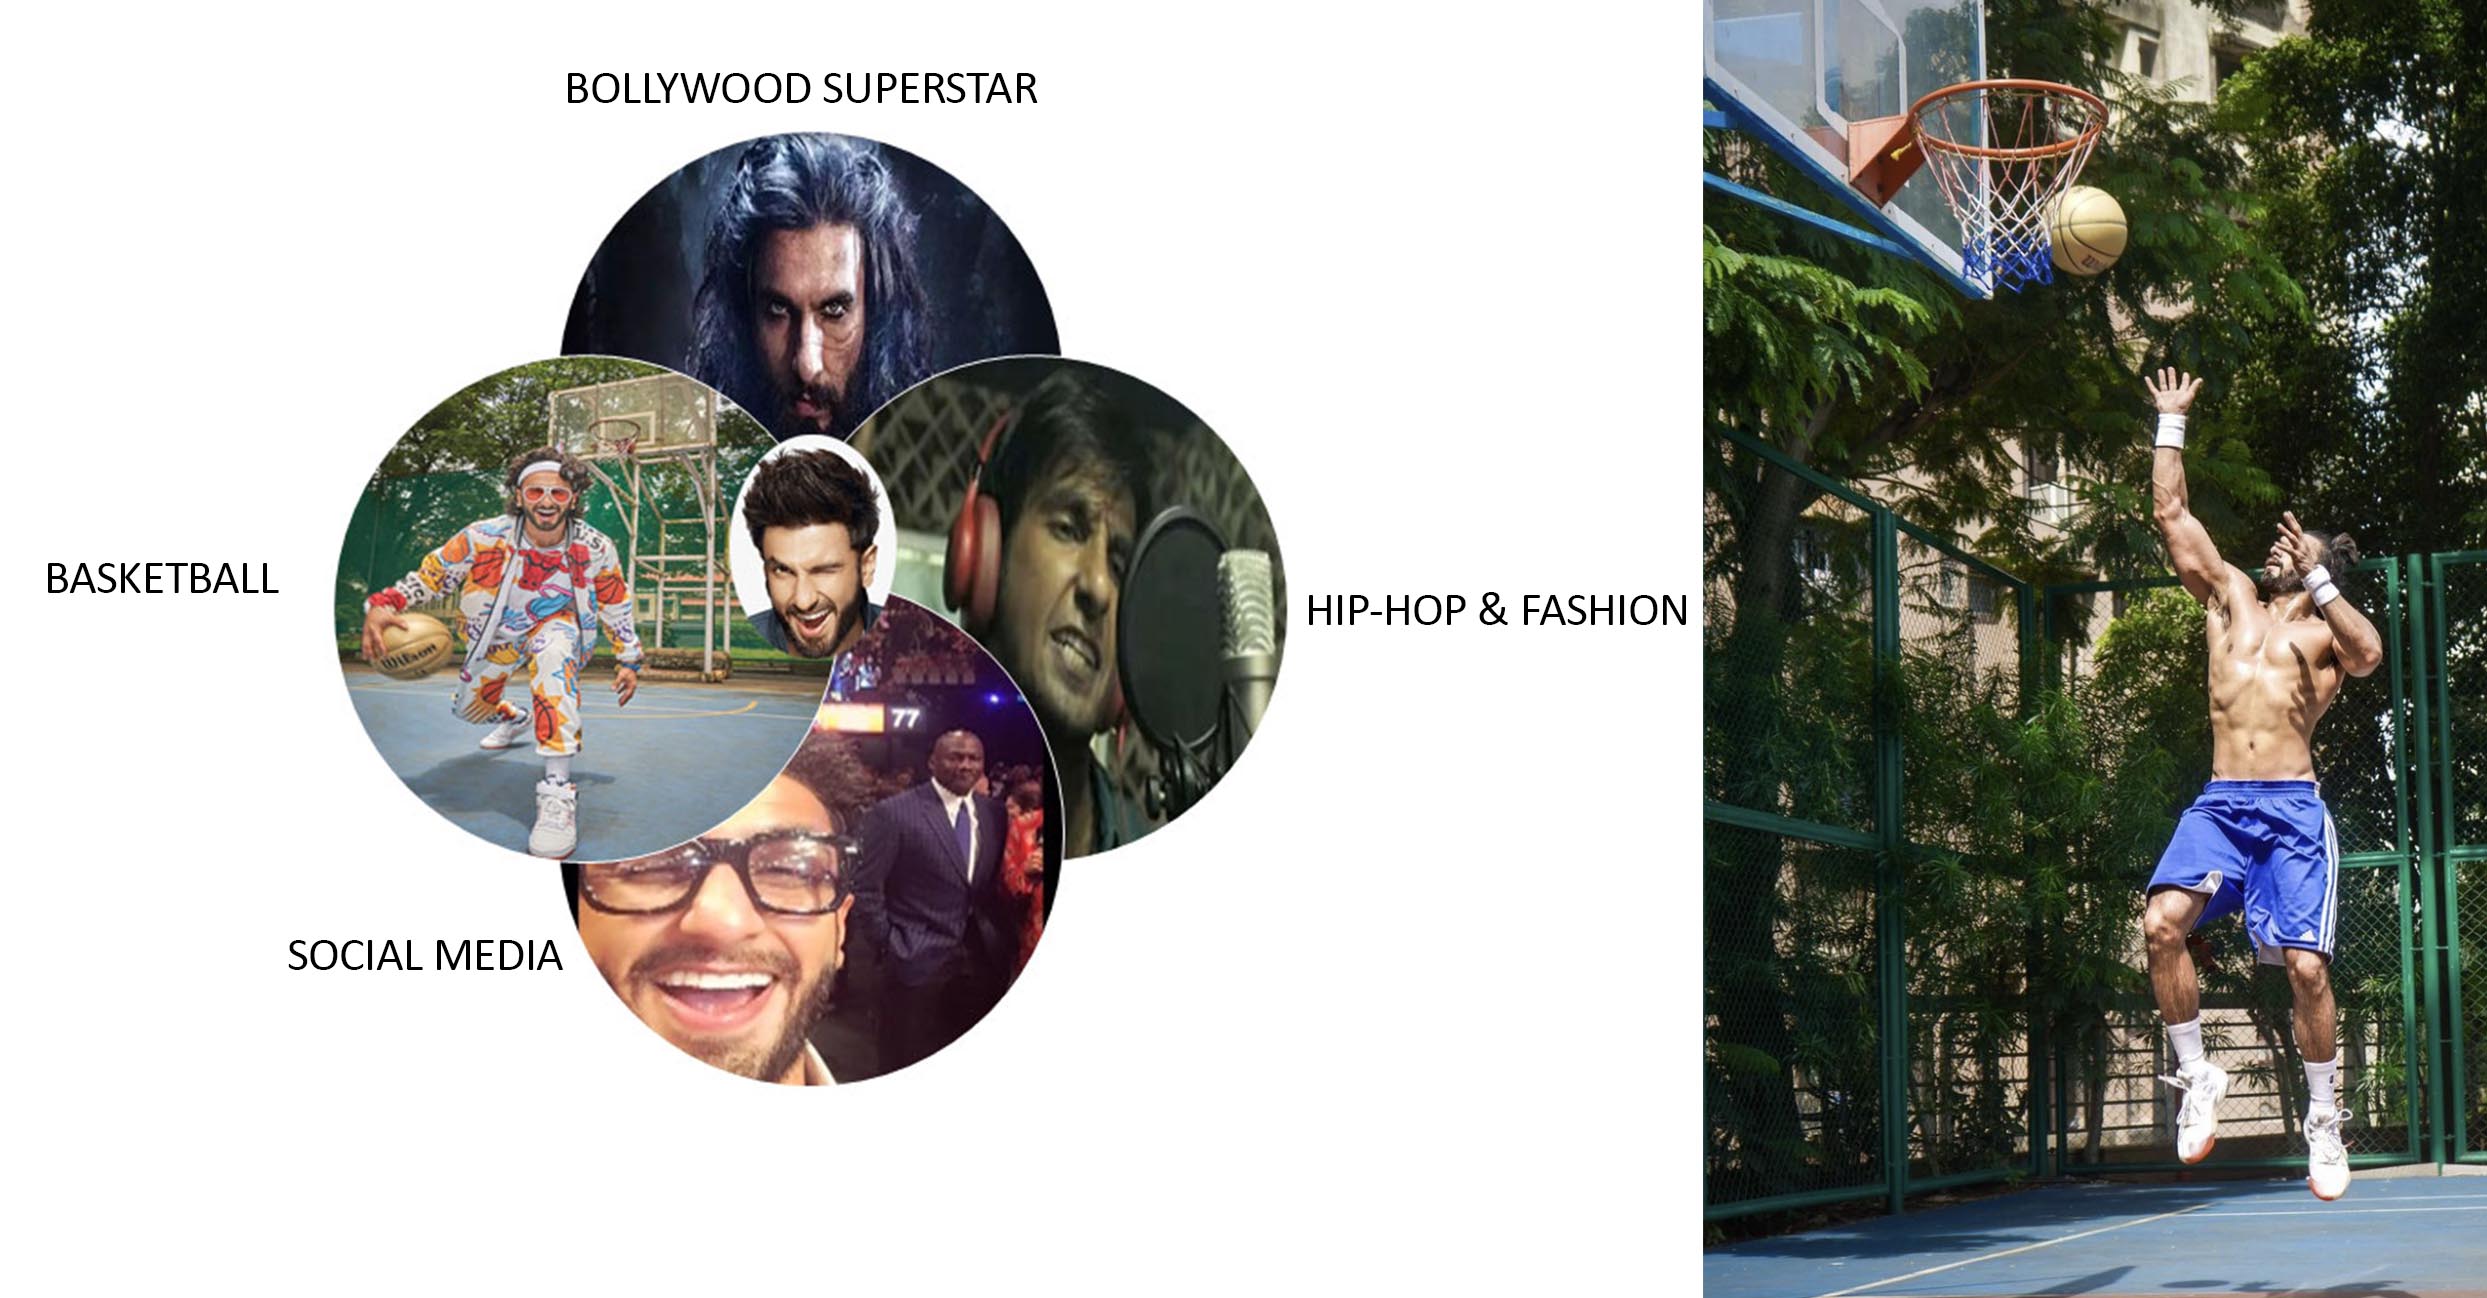 Ranbir Kapoor, Ranveer Singh: Comparing their sense of style